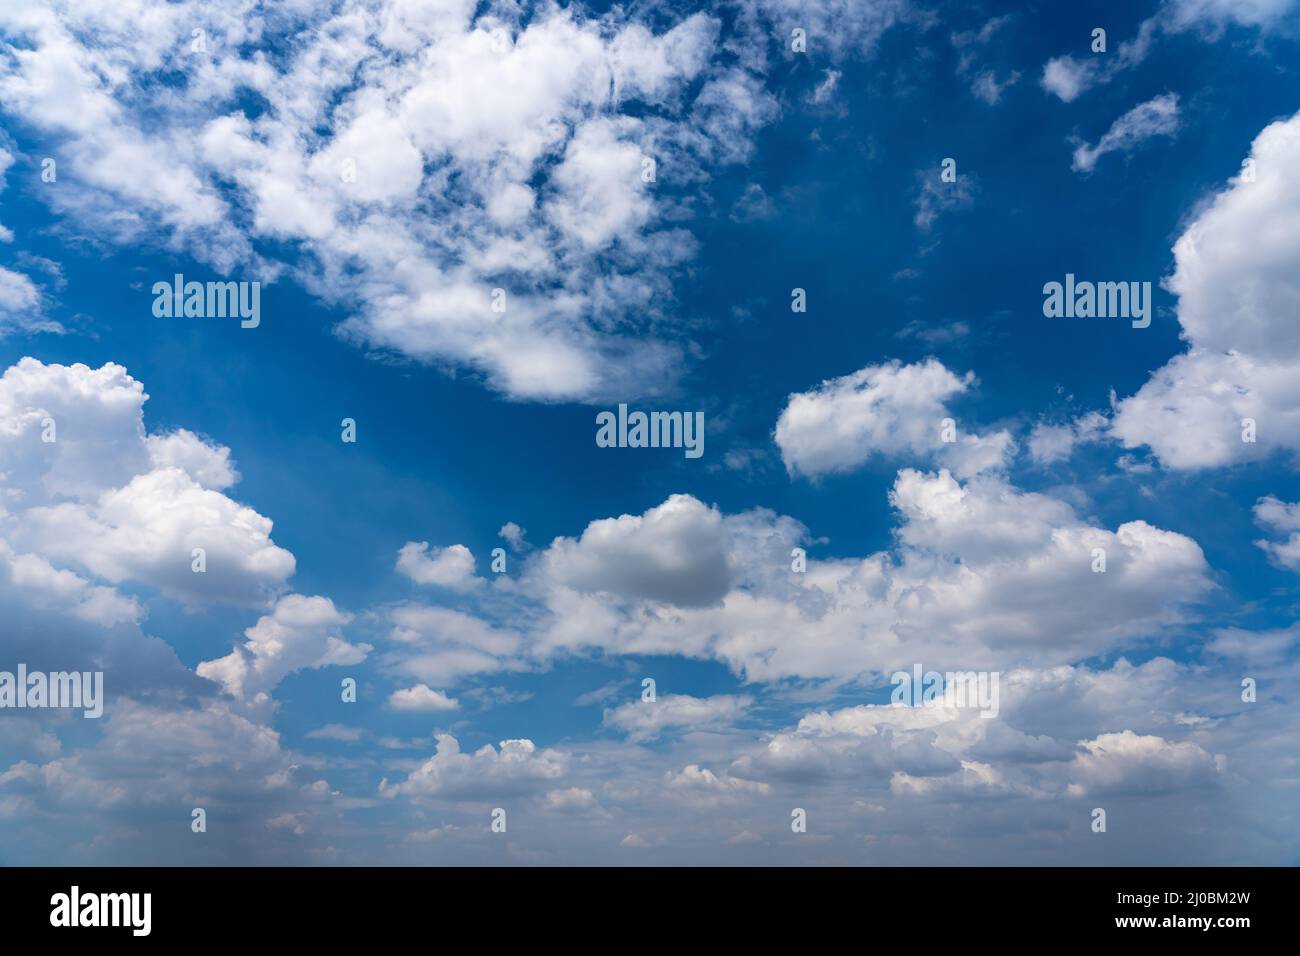 Fond bleu ciel avec des nuages blancs flottant Banque D'Images